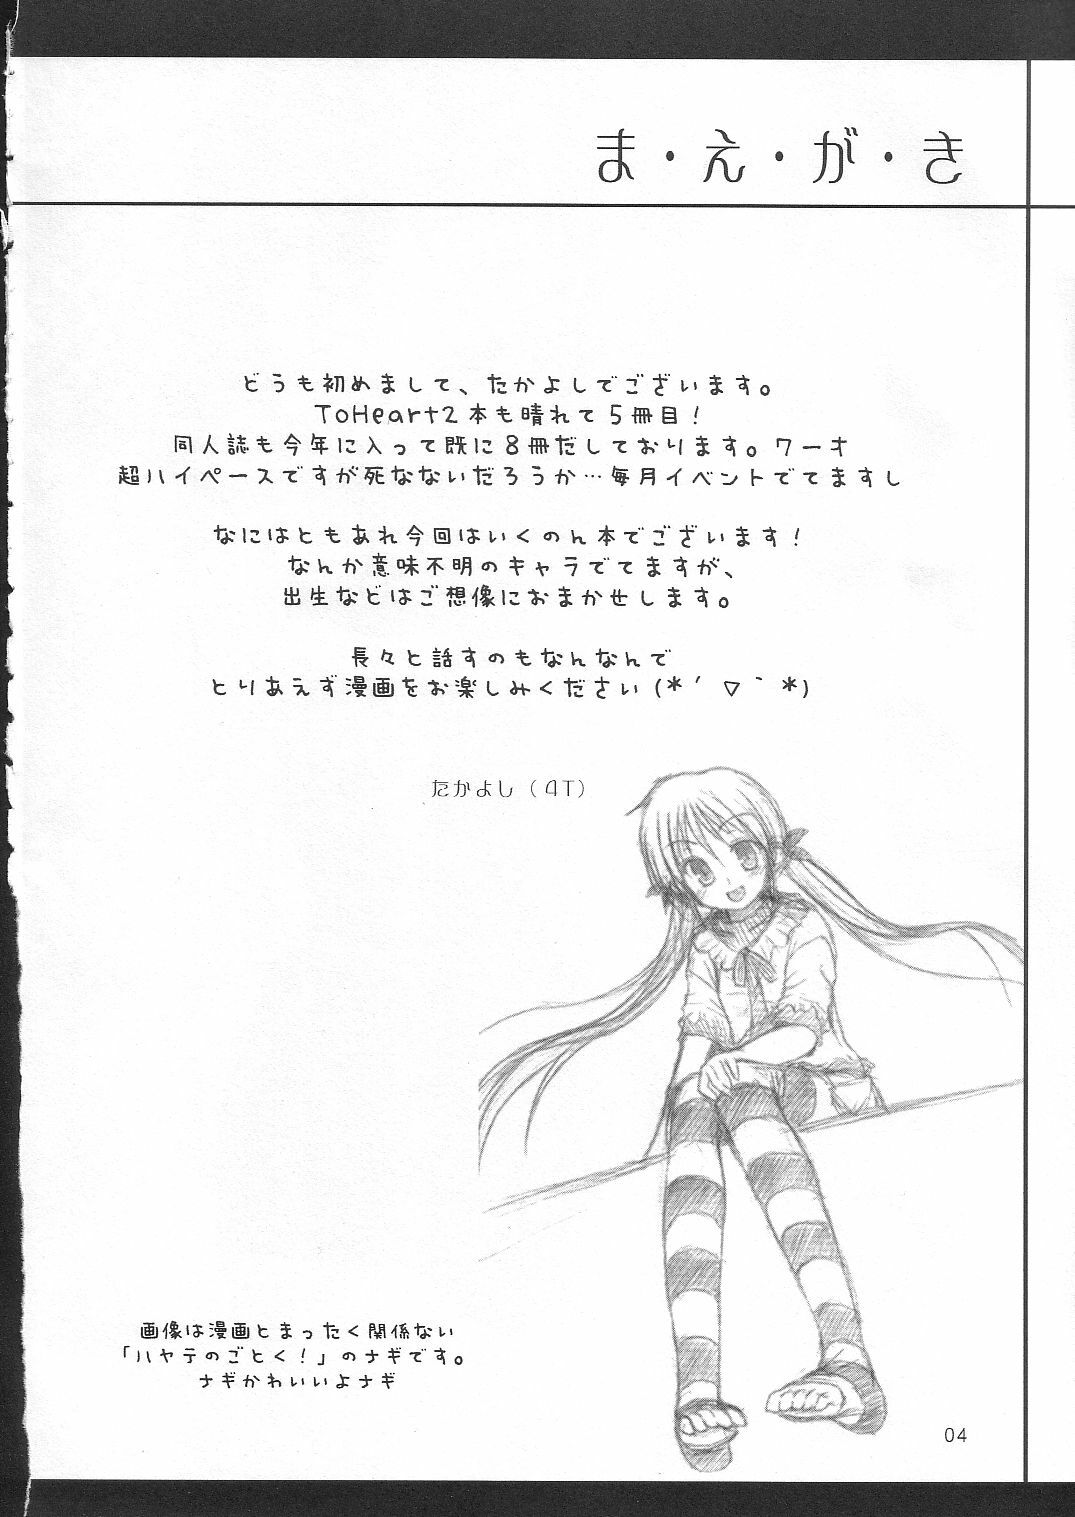 [4T] Ikuno Seikatsu Schmiz (To Heart 2) page 3 full